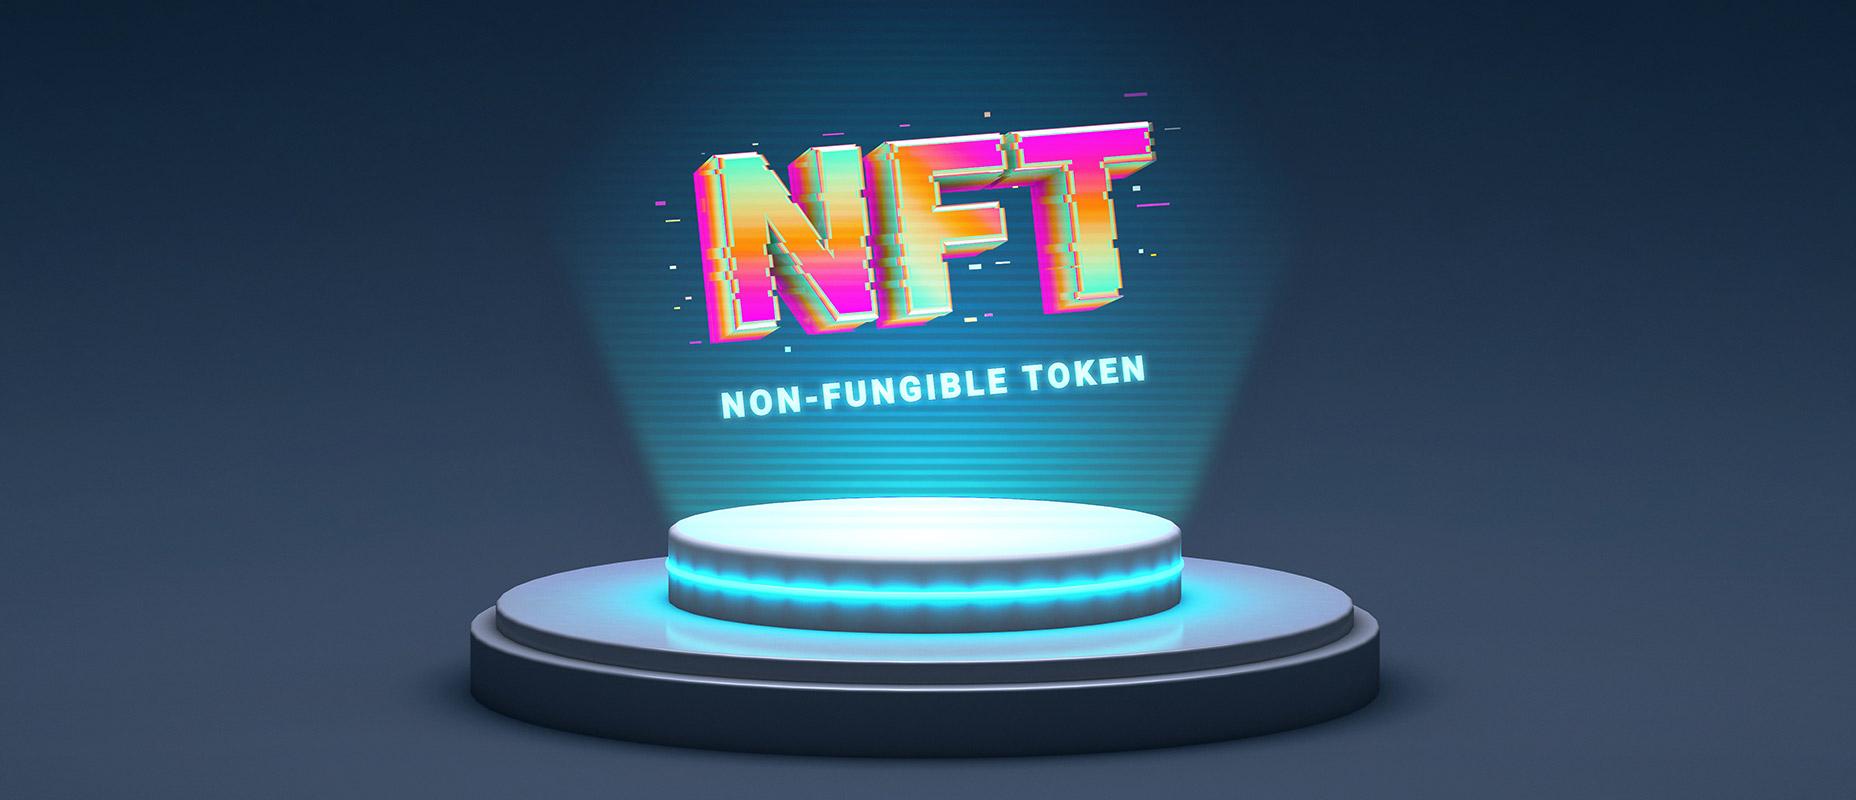 การเสนอขายหุ้นของบริษัทเกม NFT: การสร้างรายได้จากวิดีโอเกม NFT